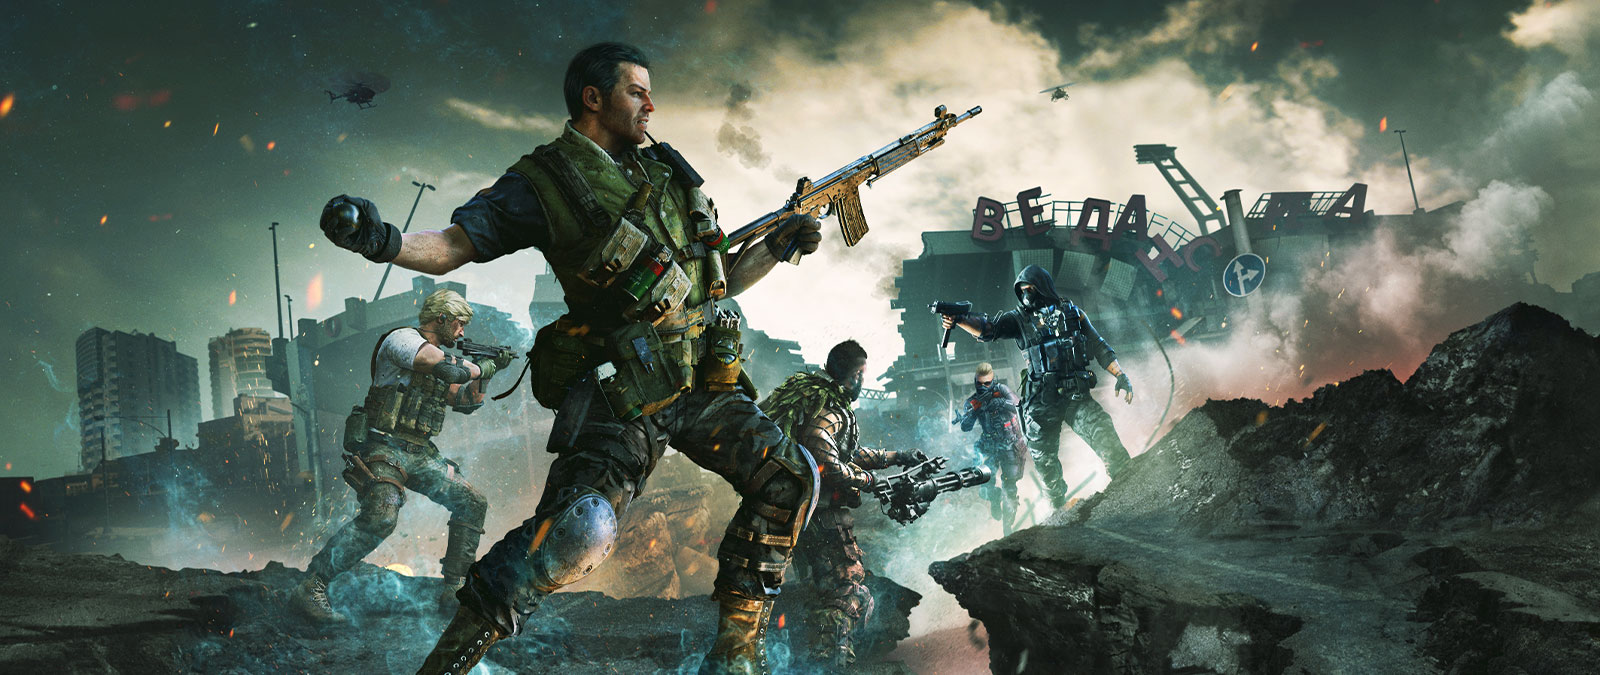 Cinco personagens em equipamentos táticos, com armas, envolvidos em uma luta em uma estrada avariada na frente de um estádio destruído